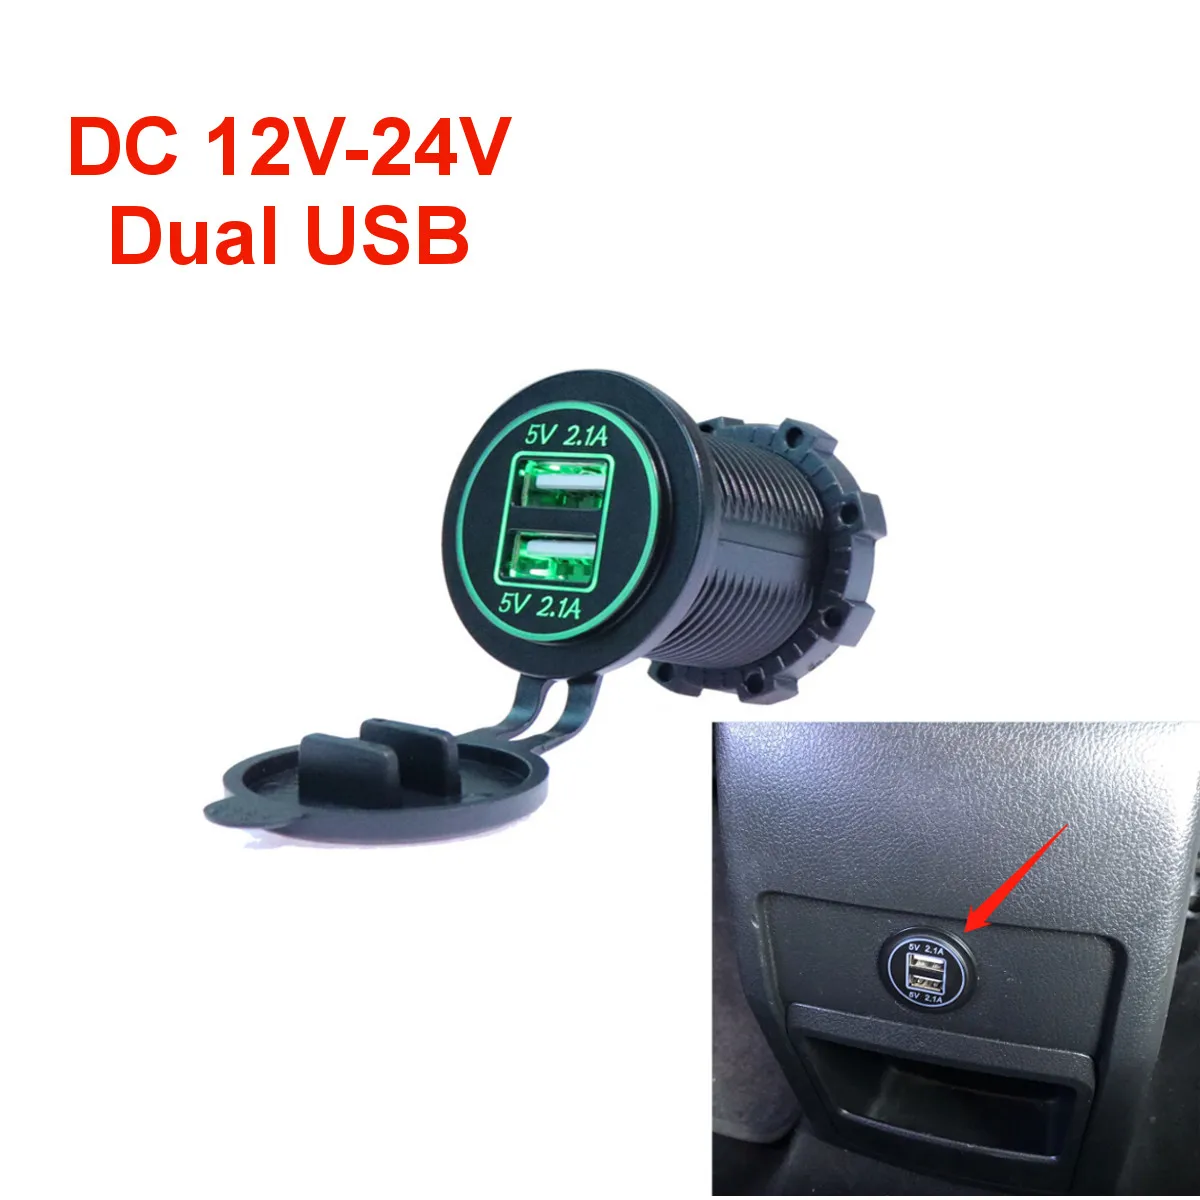 Гнездо автомобильного зарядного устройства DC 12V-24V с двумя USB-разъемами, Водонепроницаемый Огнестойкий светодиодный индикатор для Ipad Iphone MP3 GPS